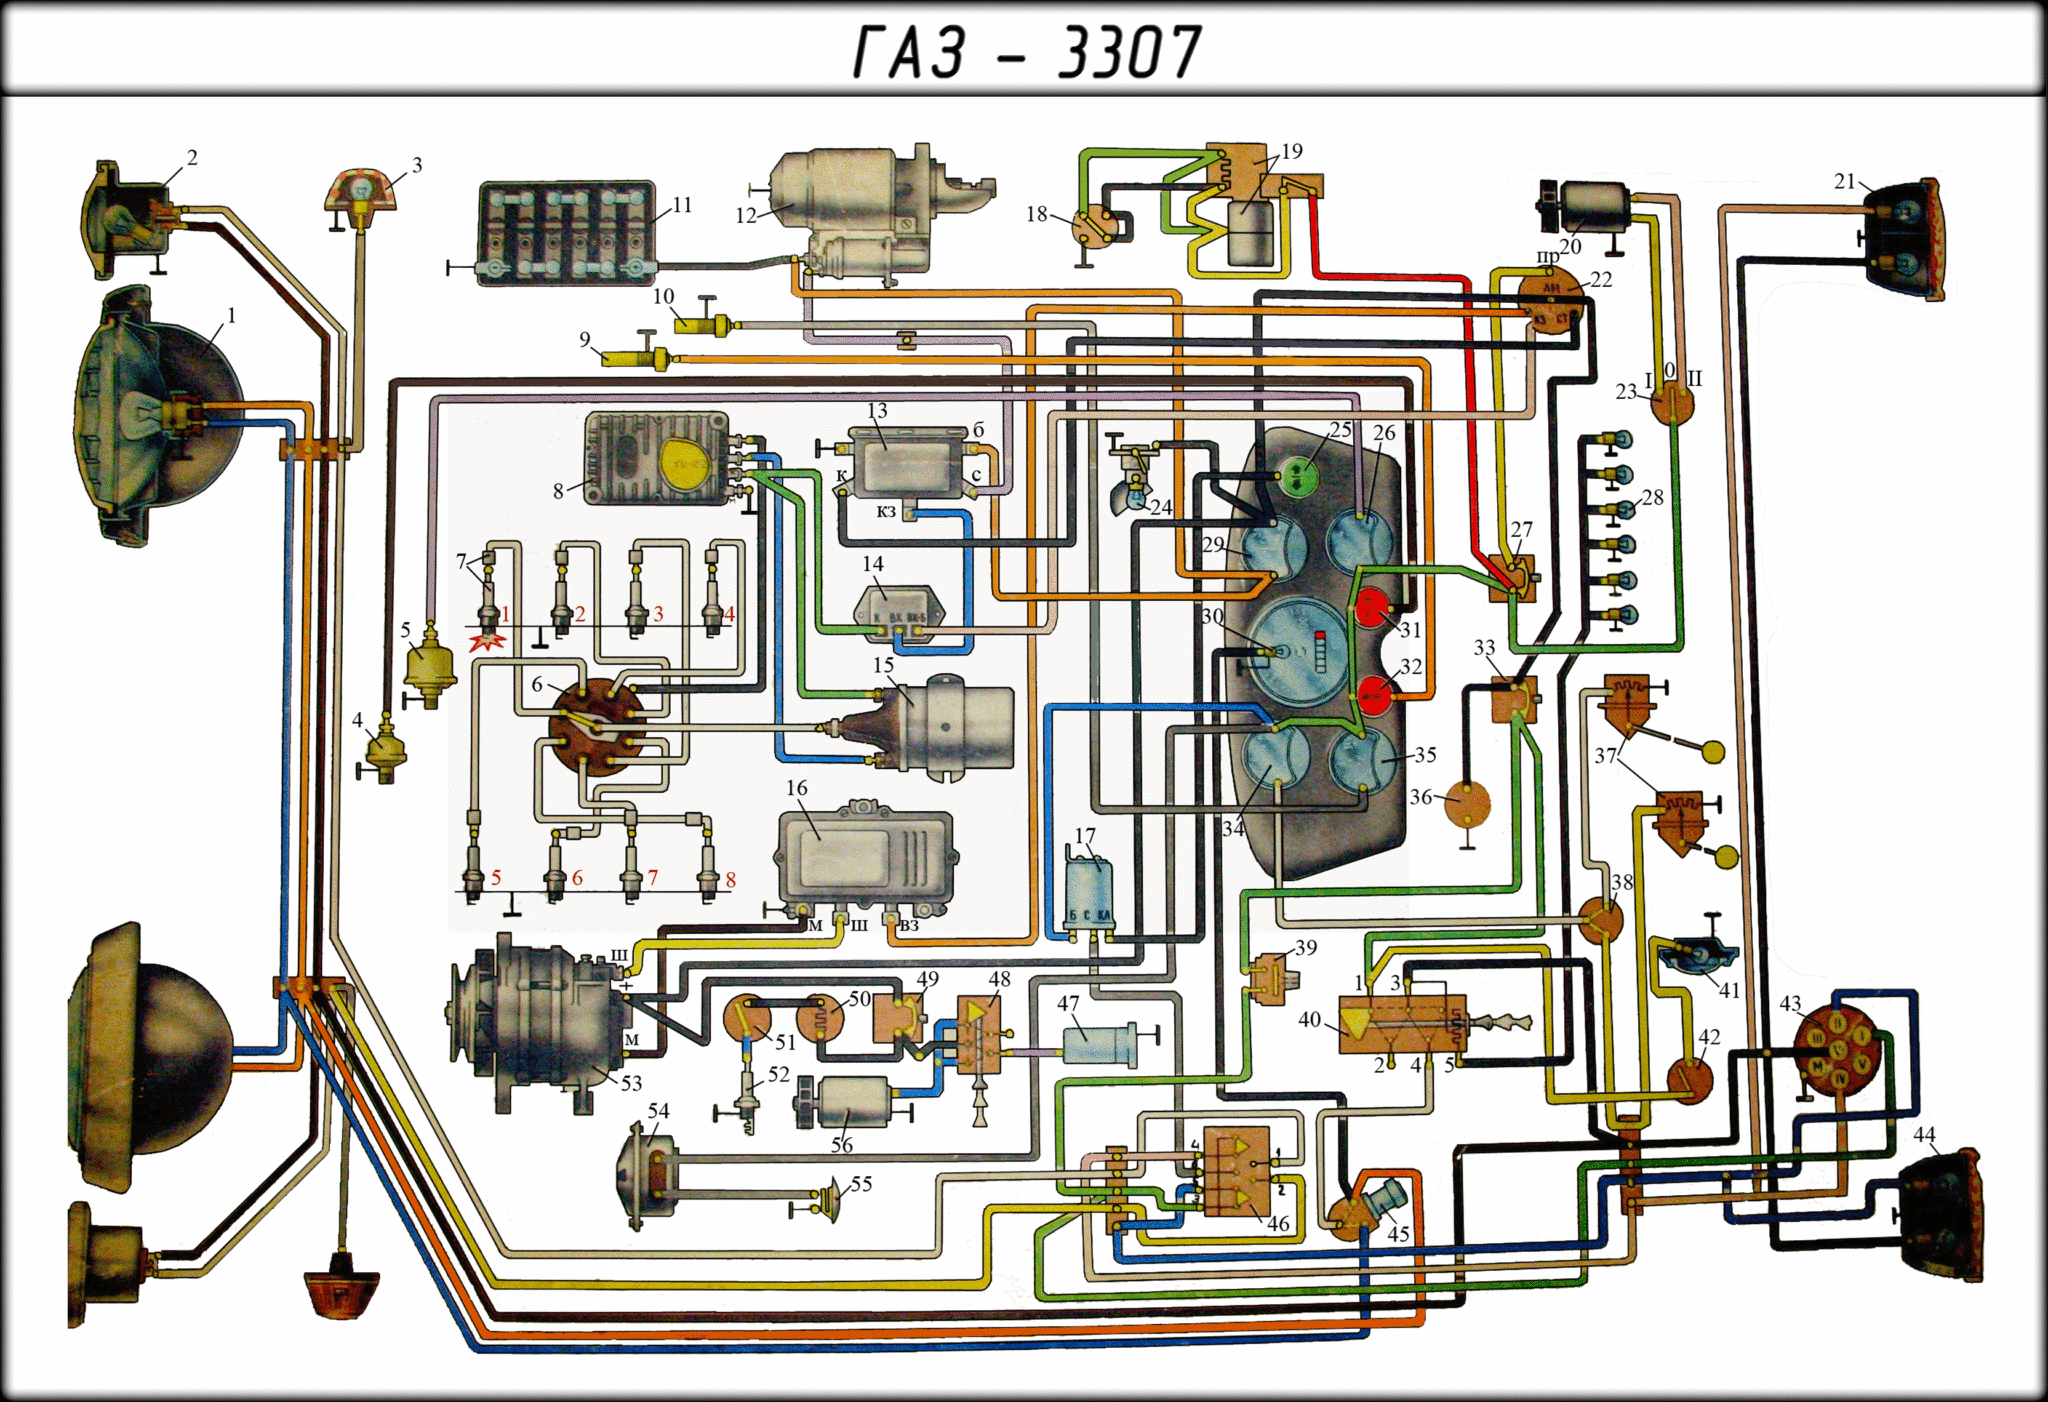 Цветная электросхема для газ-3307 и газ-3309 с описанием